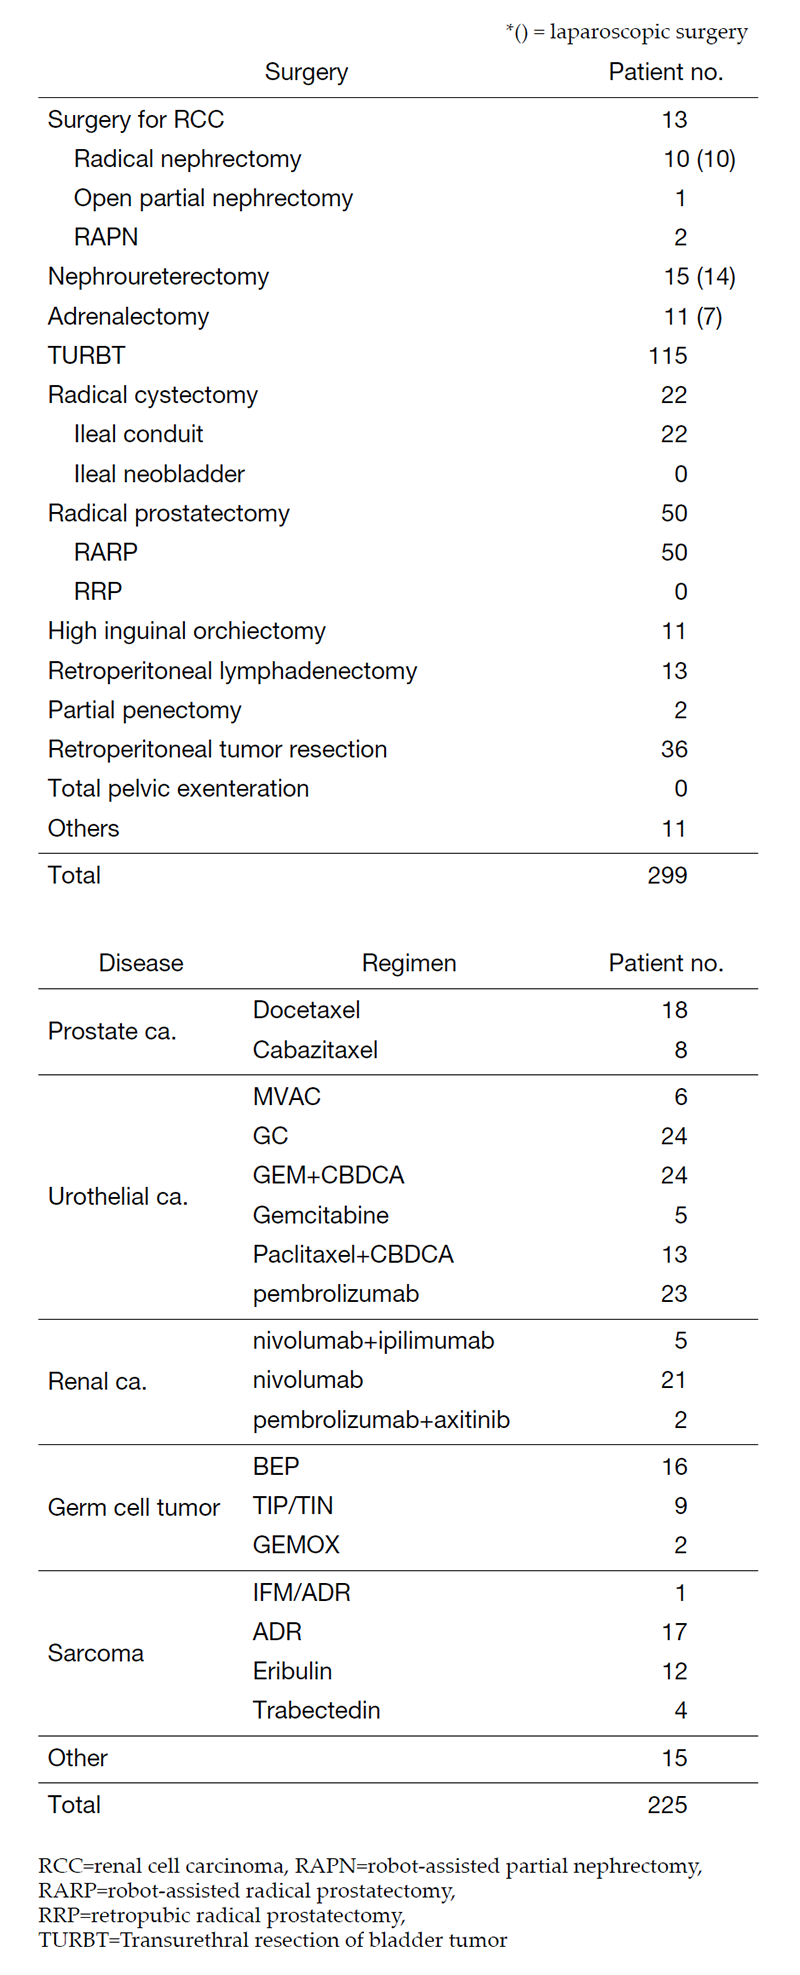 Table 1. Patients statistics: Major treatment